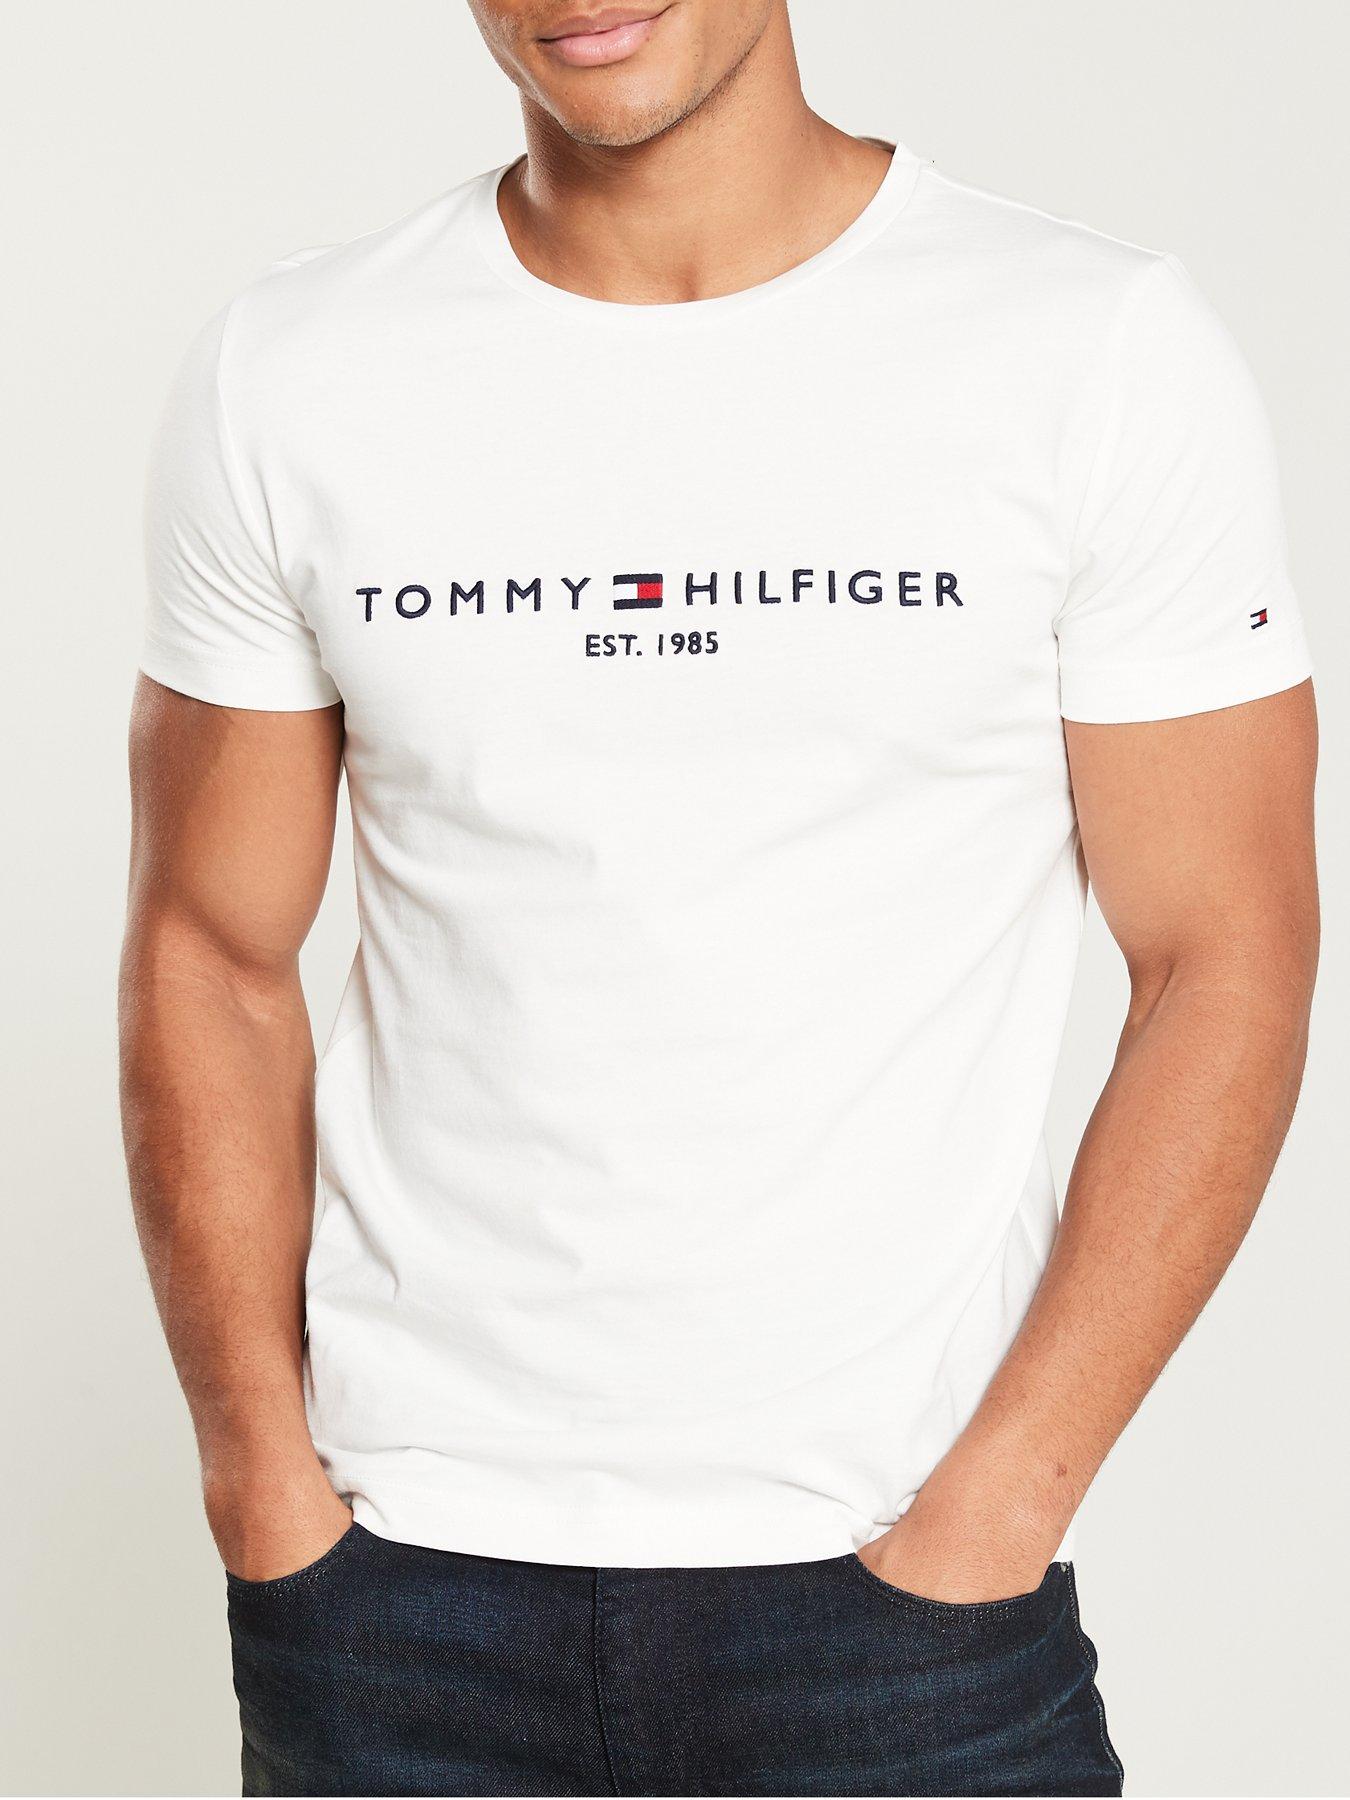 tommy logo shirt